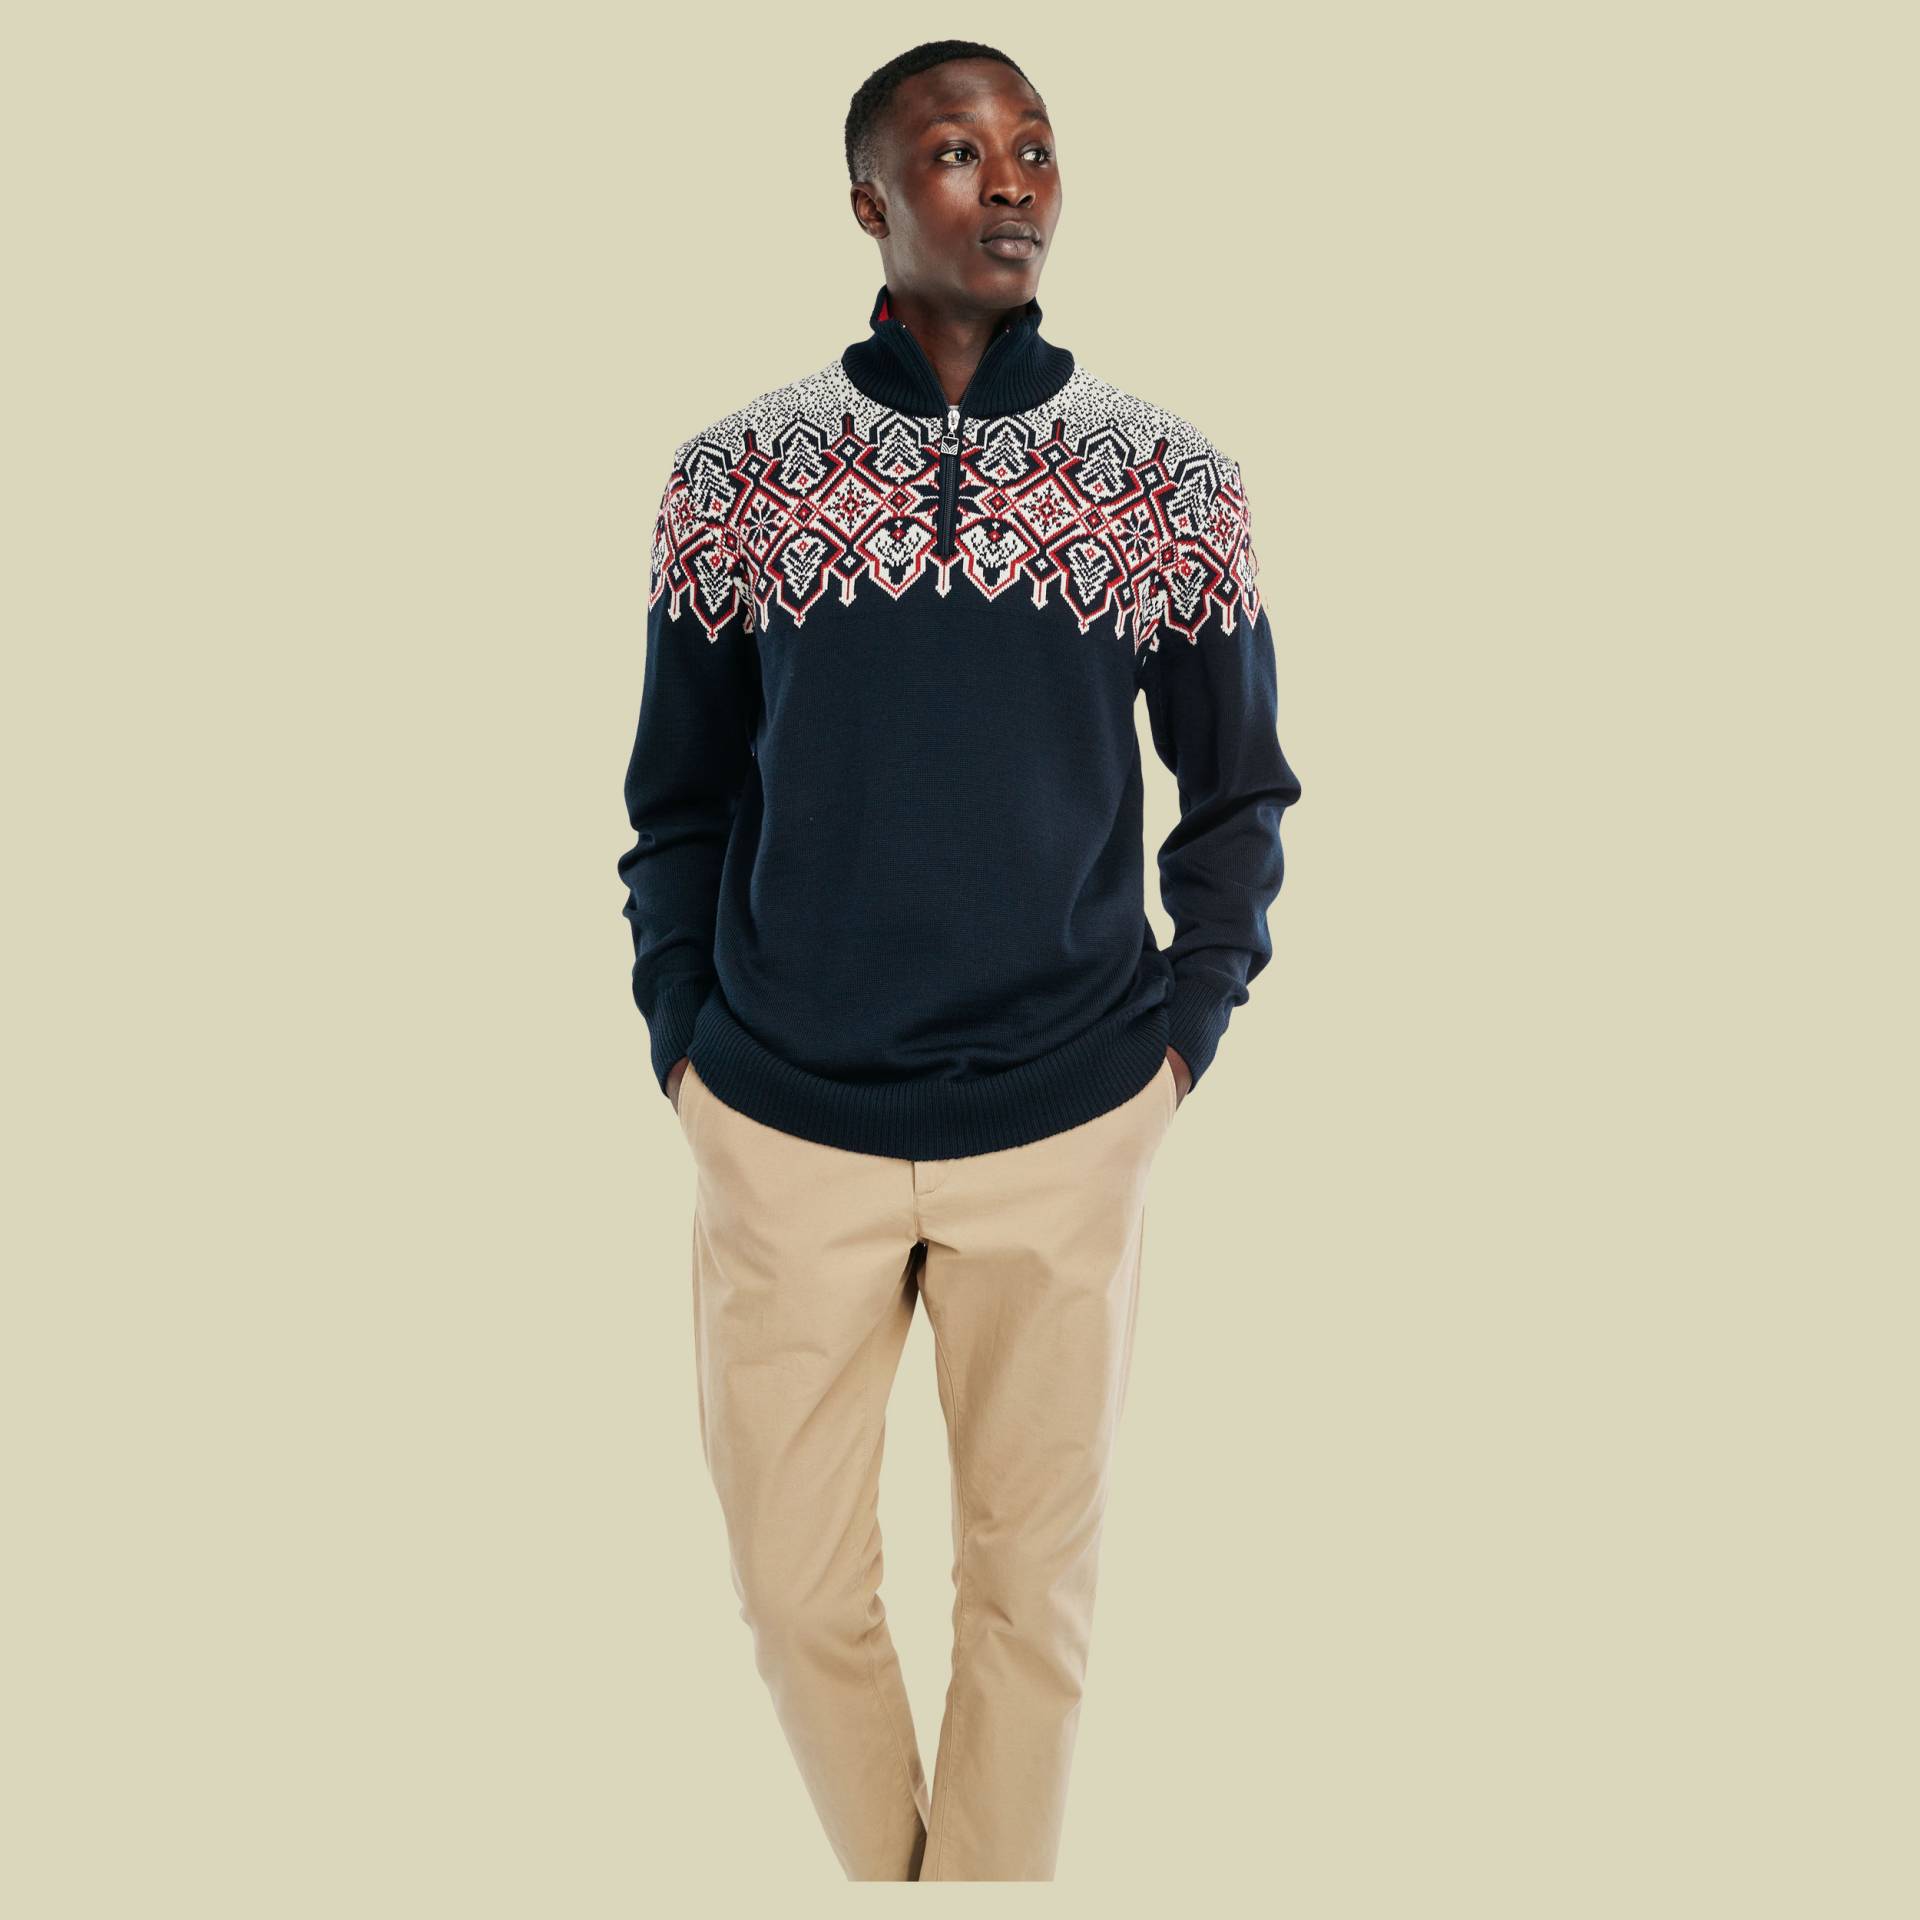 Winterland Sweater Men Größe M  Farbe navy-off white-raspberry von Dale of Norway